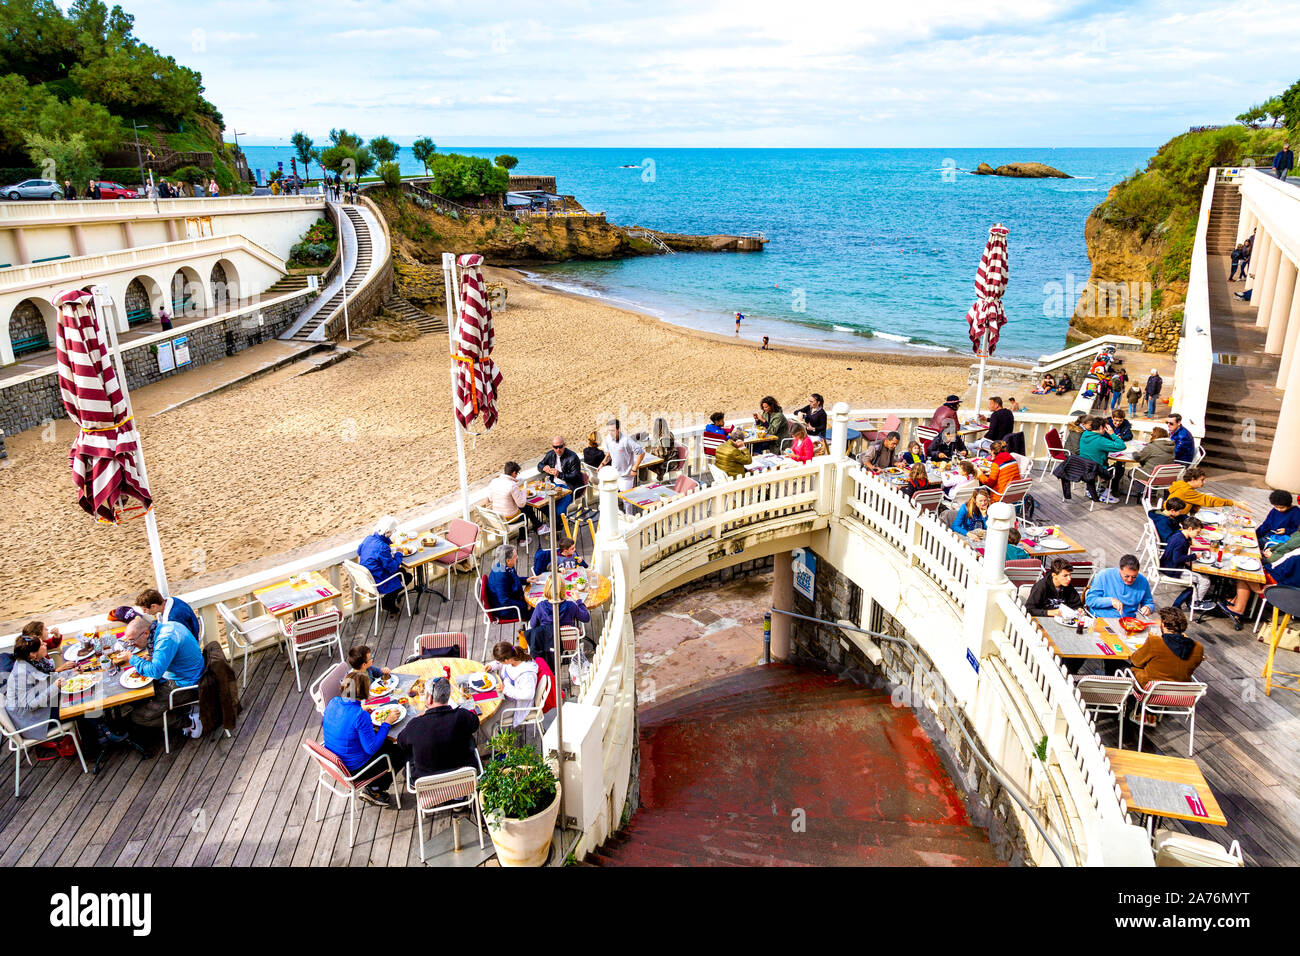 Le persone che cenano al ristorante Aréna Biarritz si affacciano sulla Plage du Port Vieux, Biarritz, Francia Foto Stock